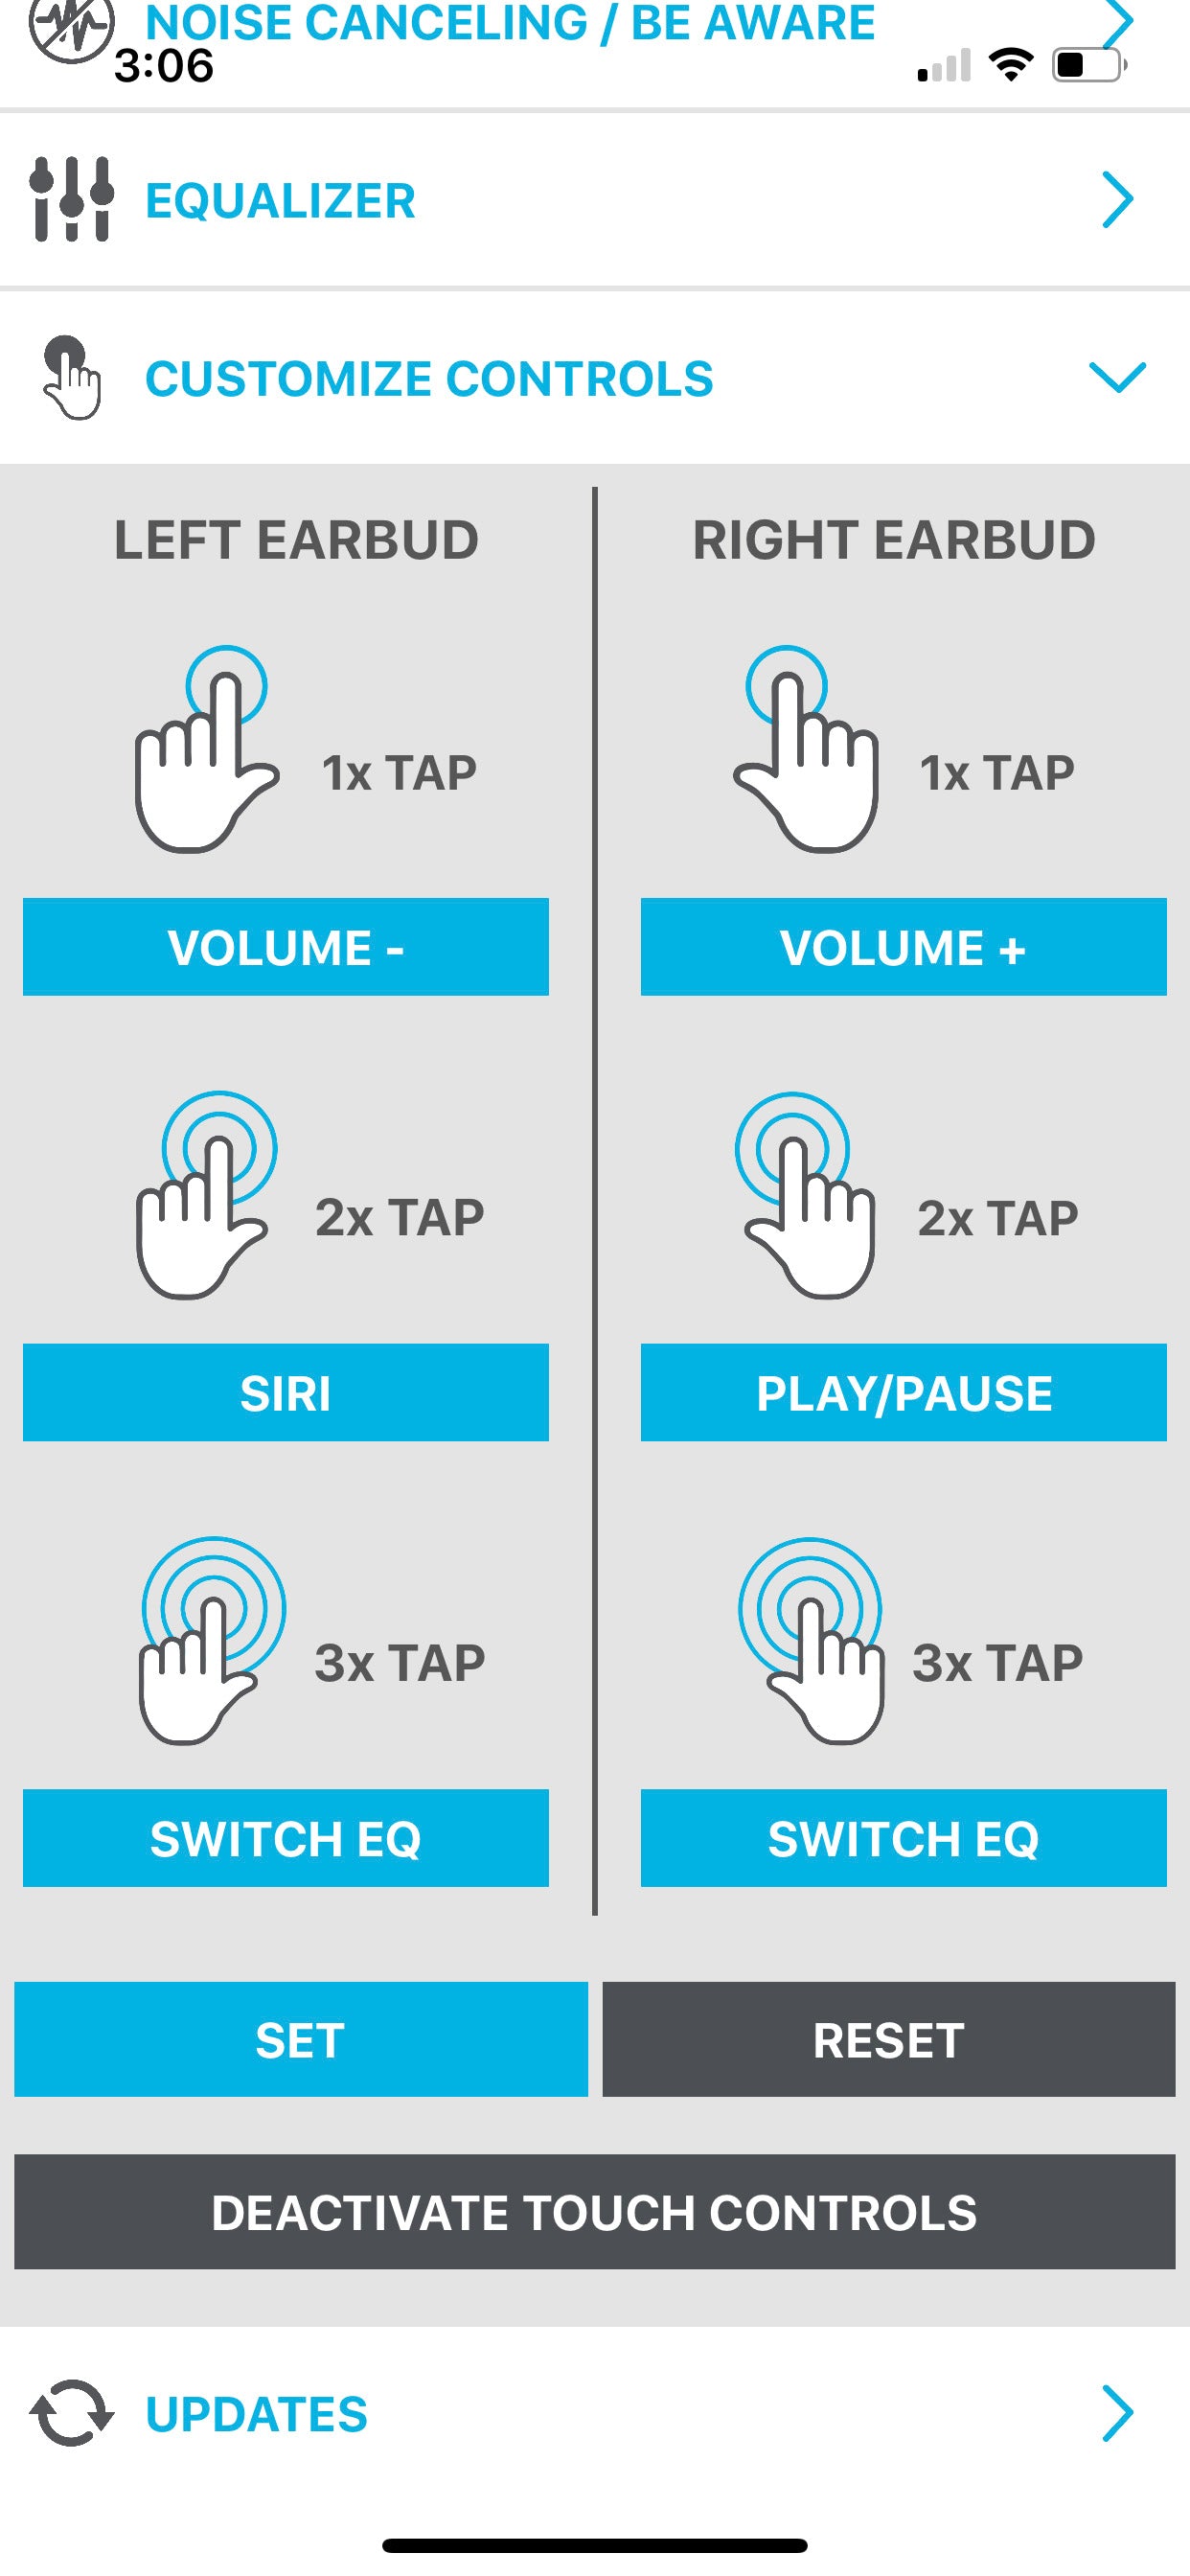 Screenshot of app showing customize controls menu